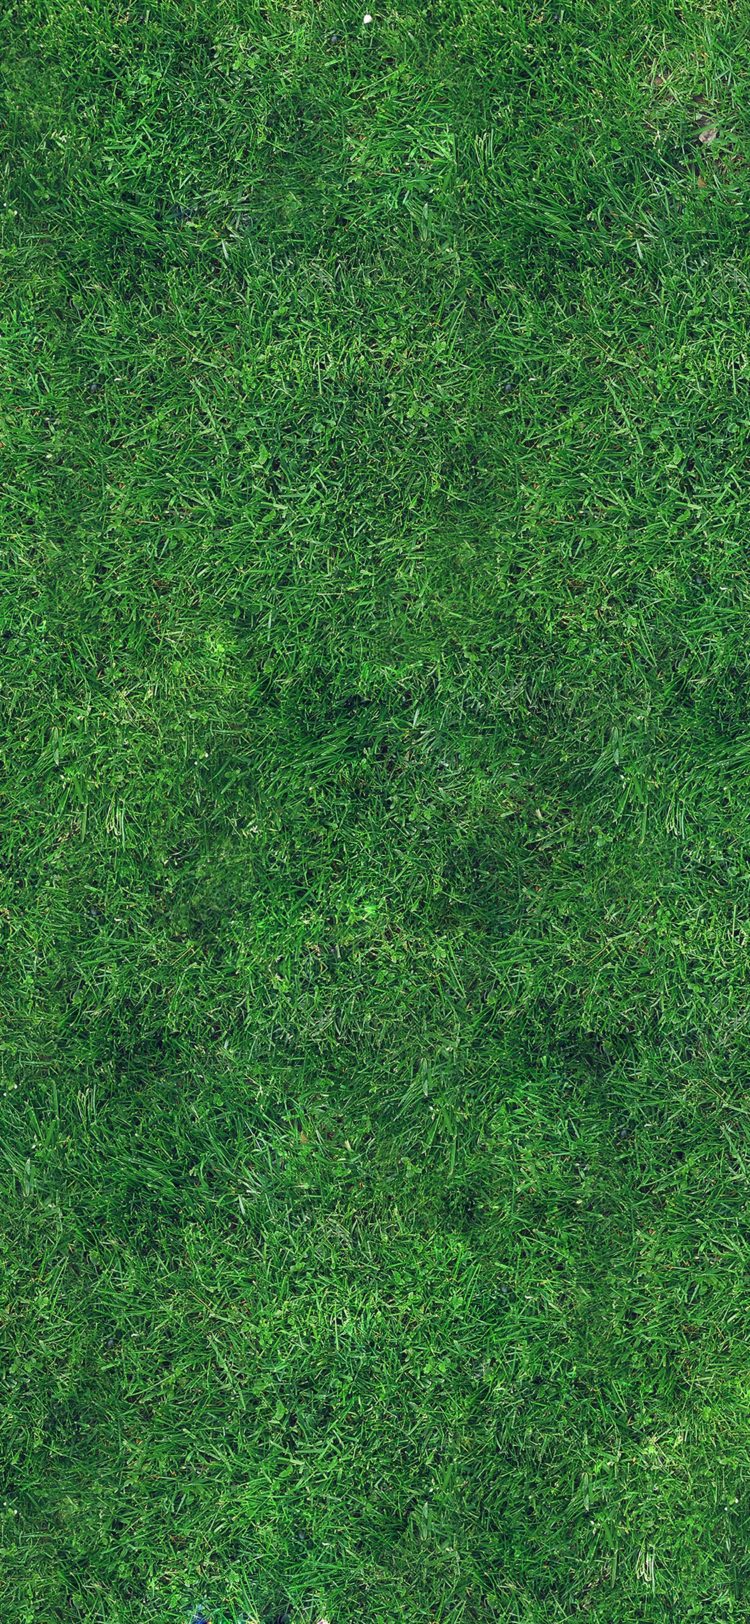 grass texture 1024x1024